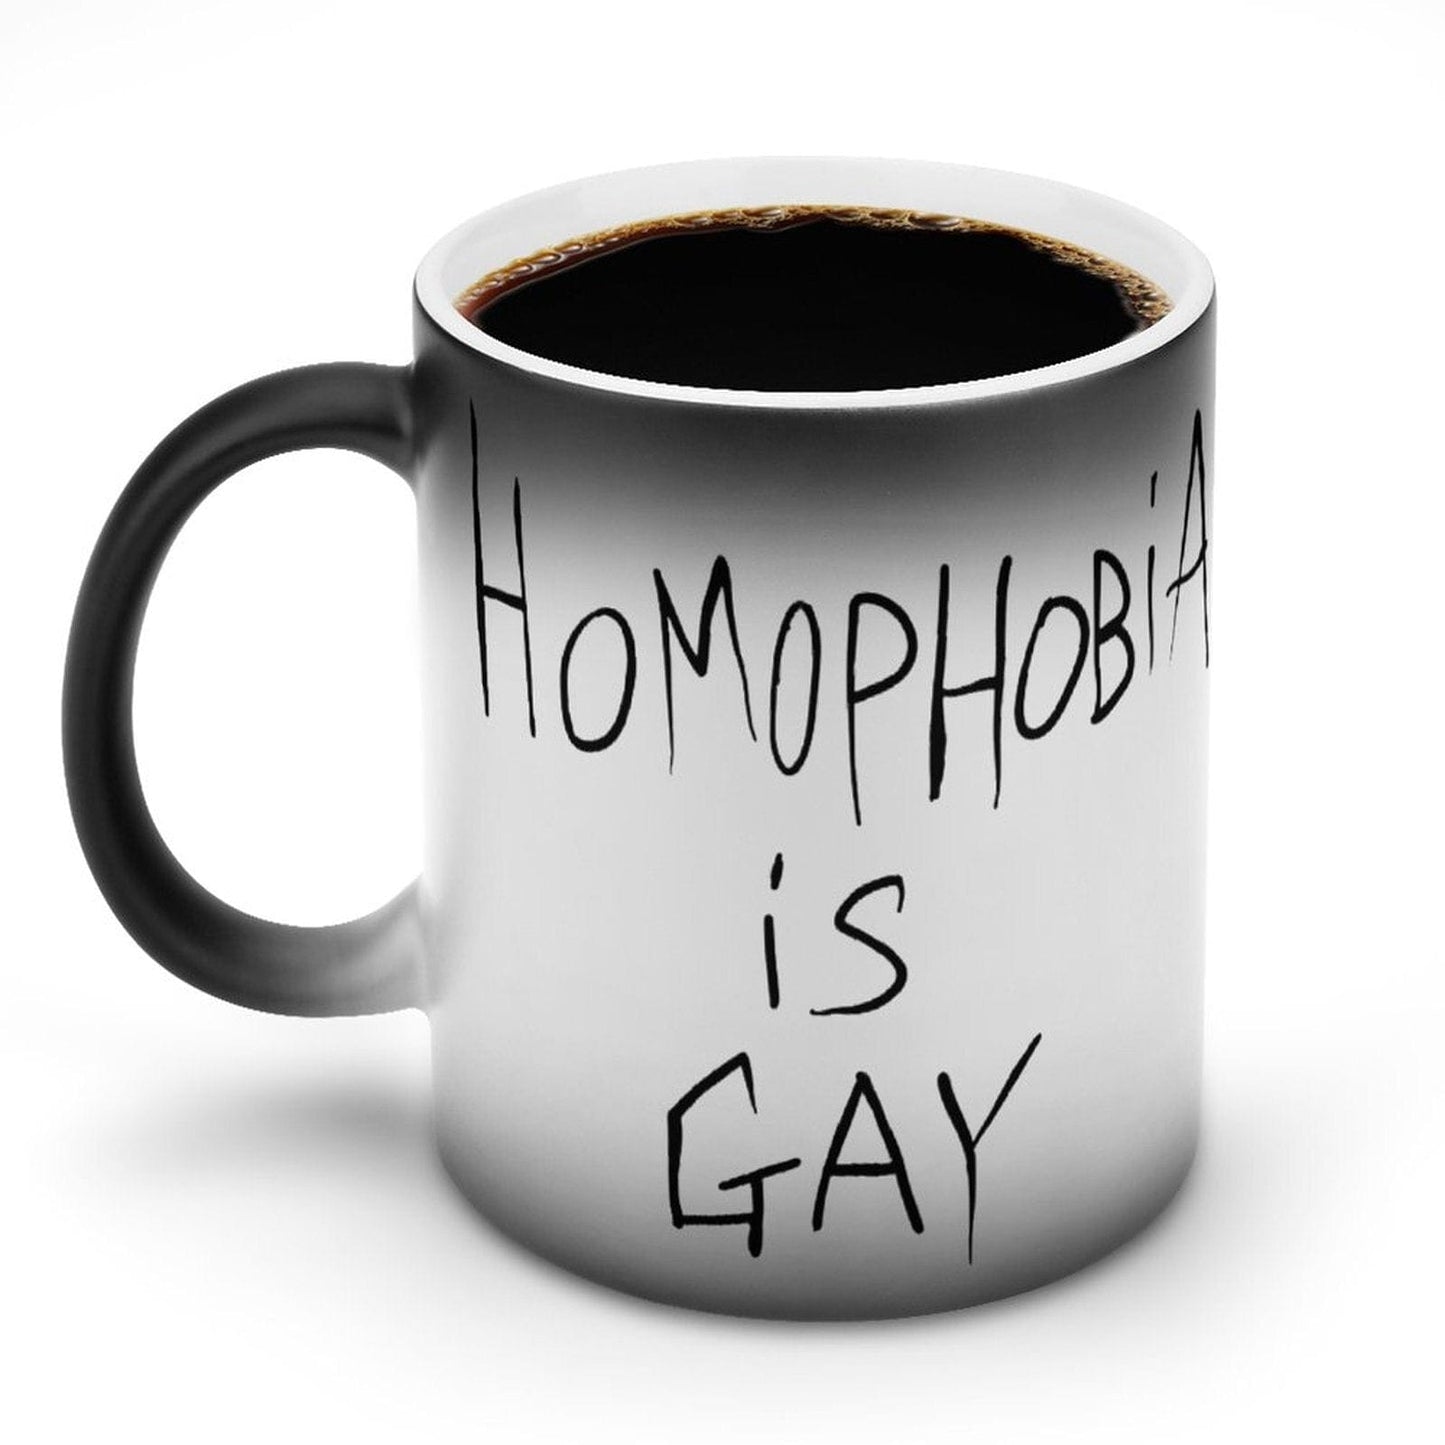 LGBTQ+ Mug